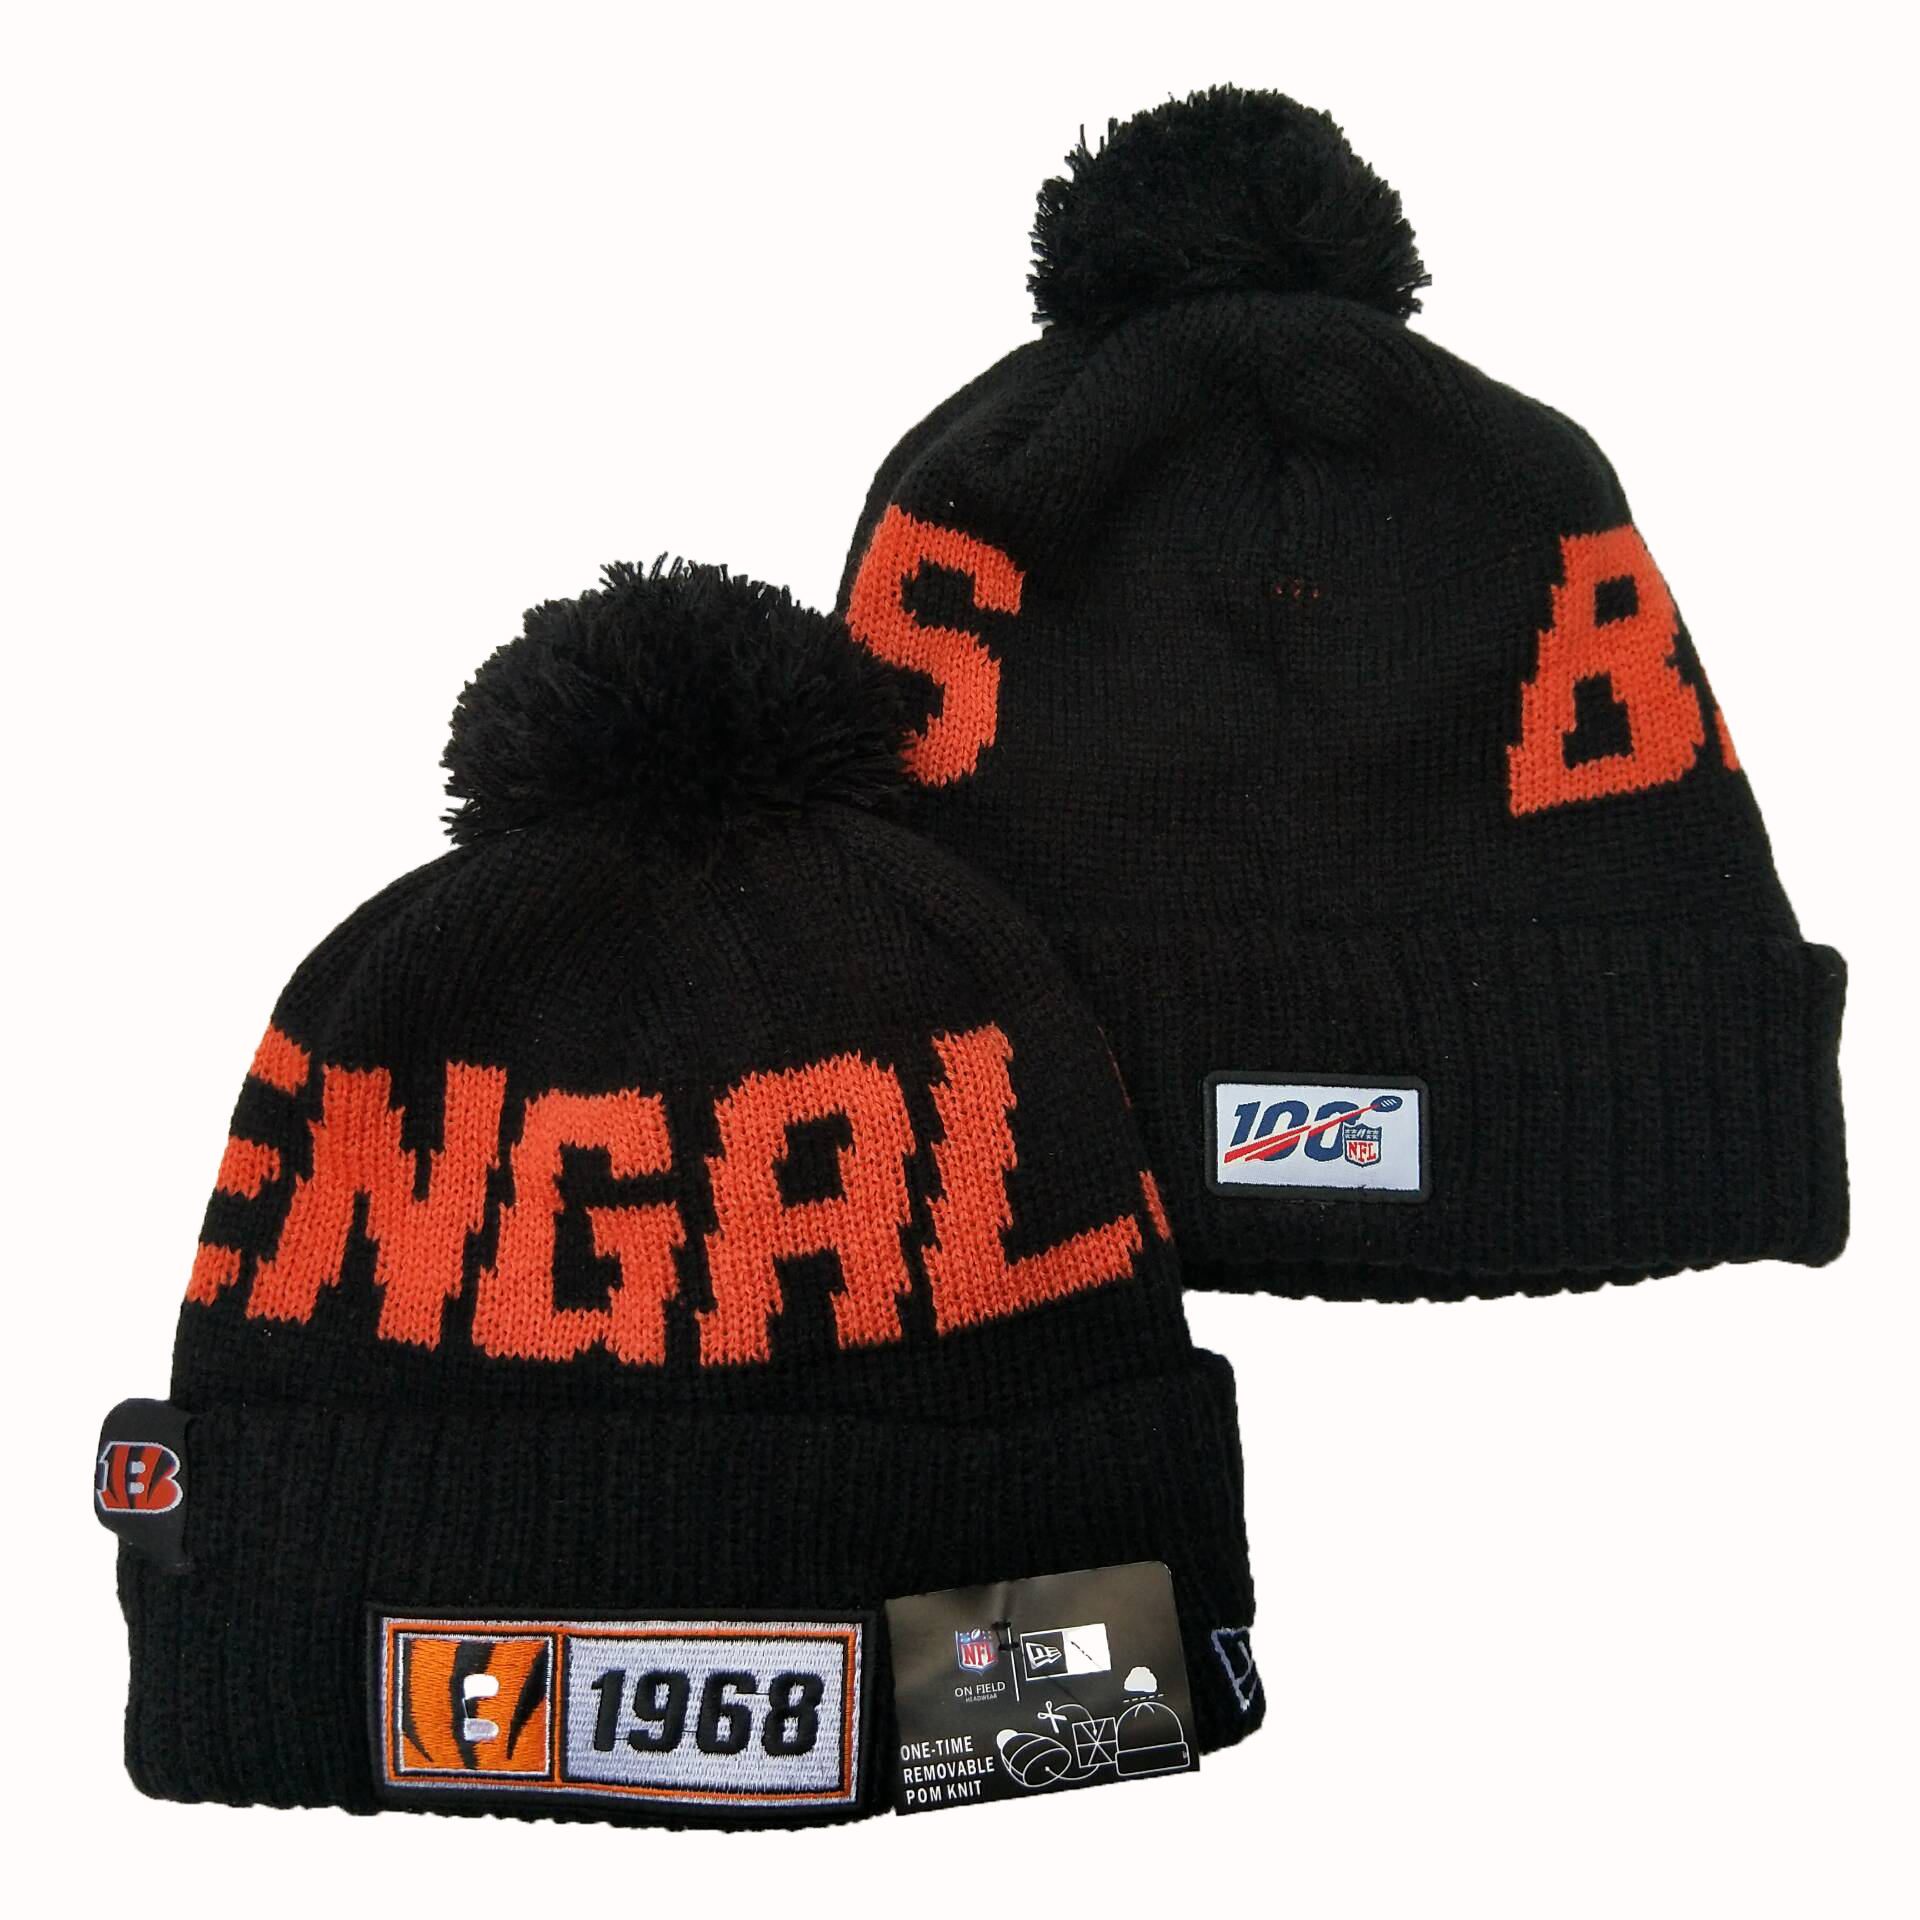 NFL Cincinnati Bengals New Era 2019 100th Season Knit Hats 016